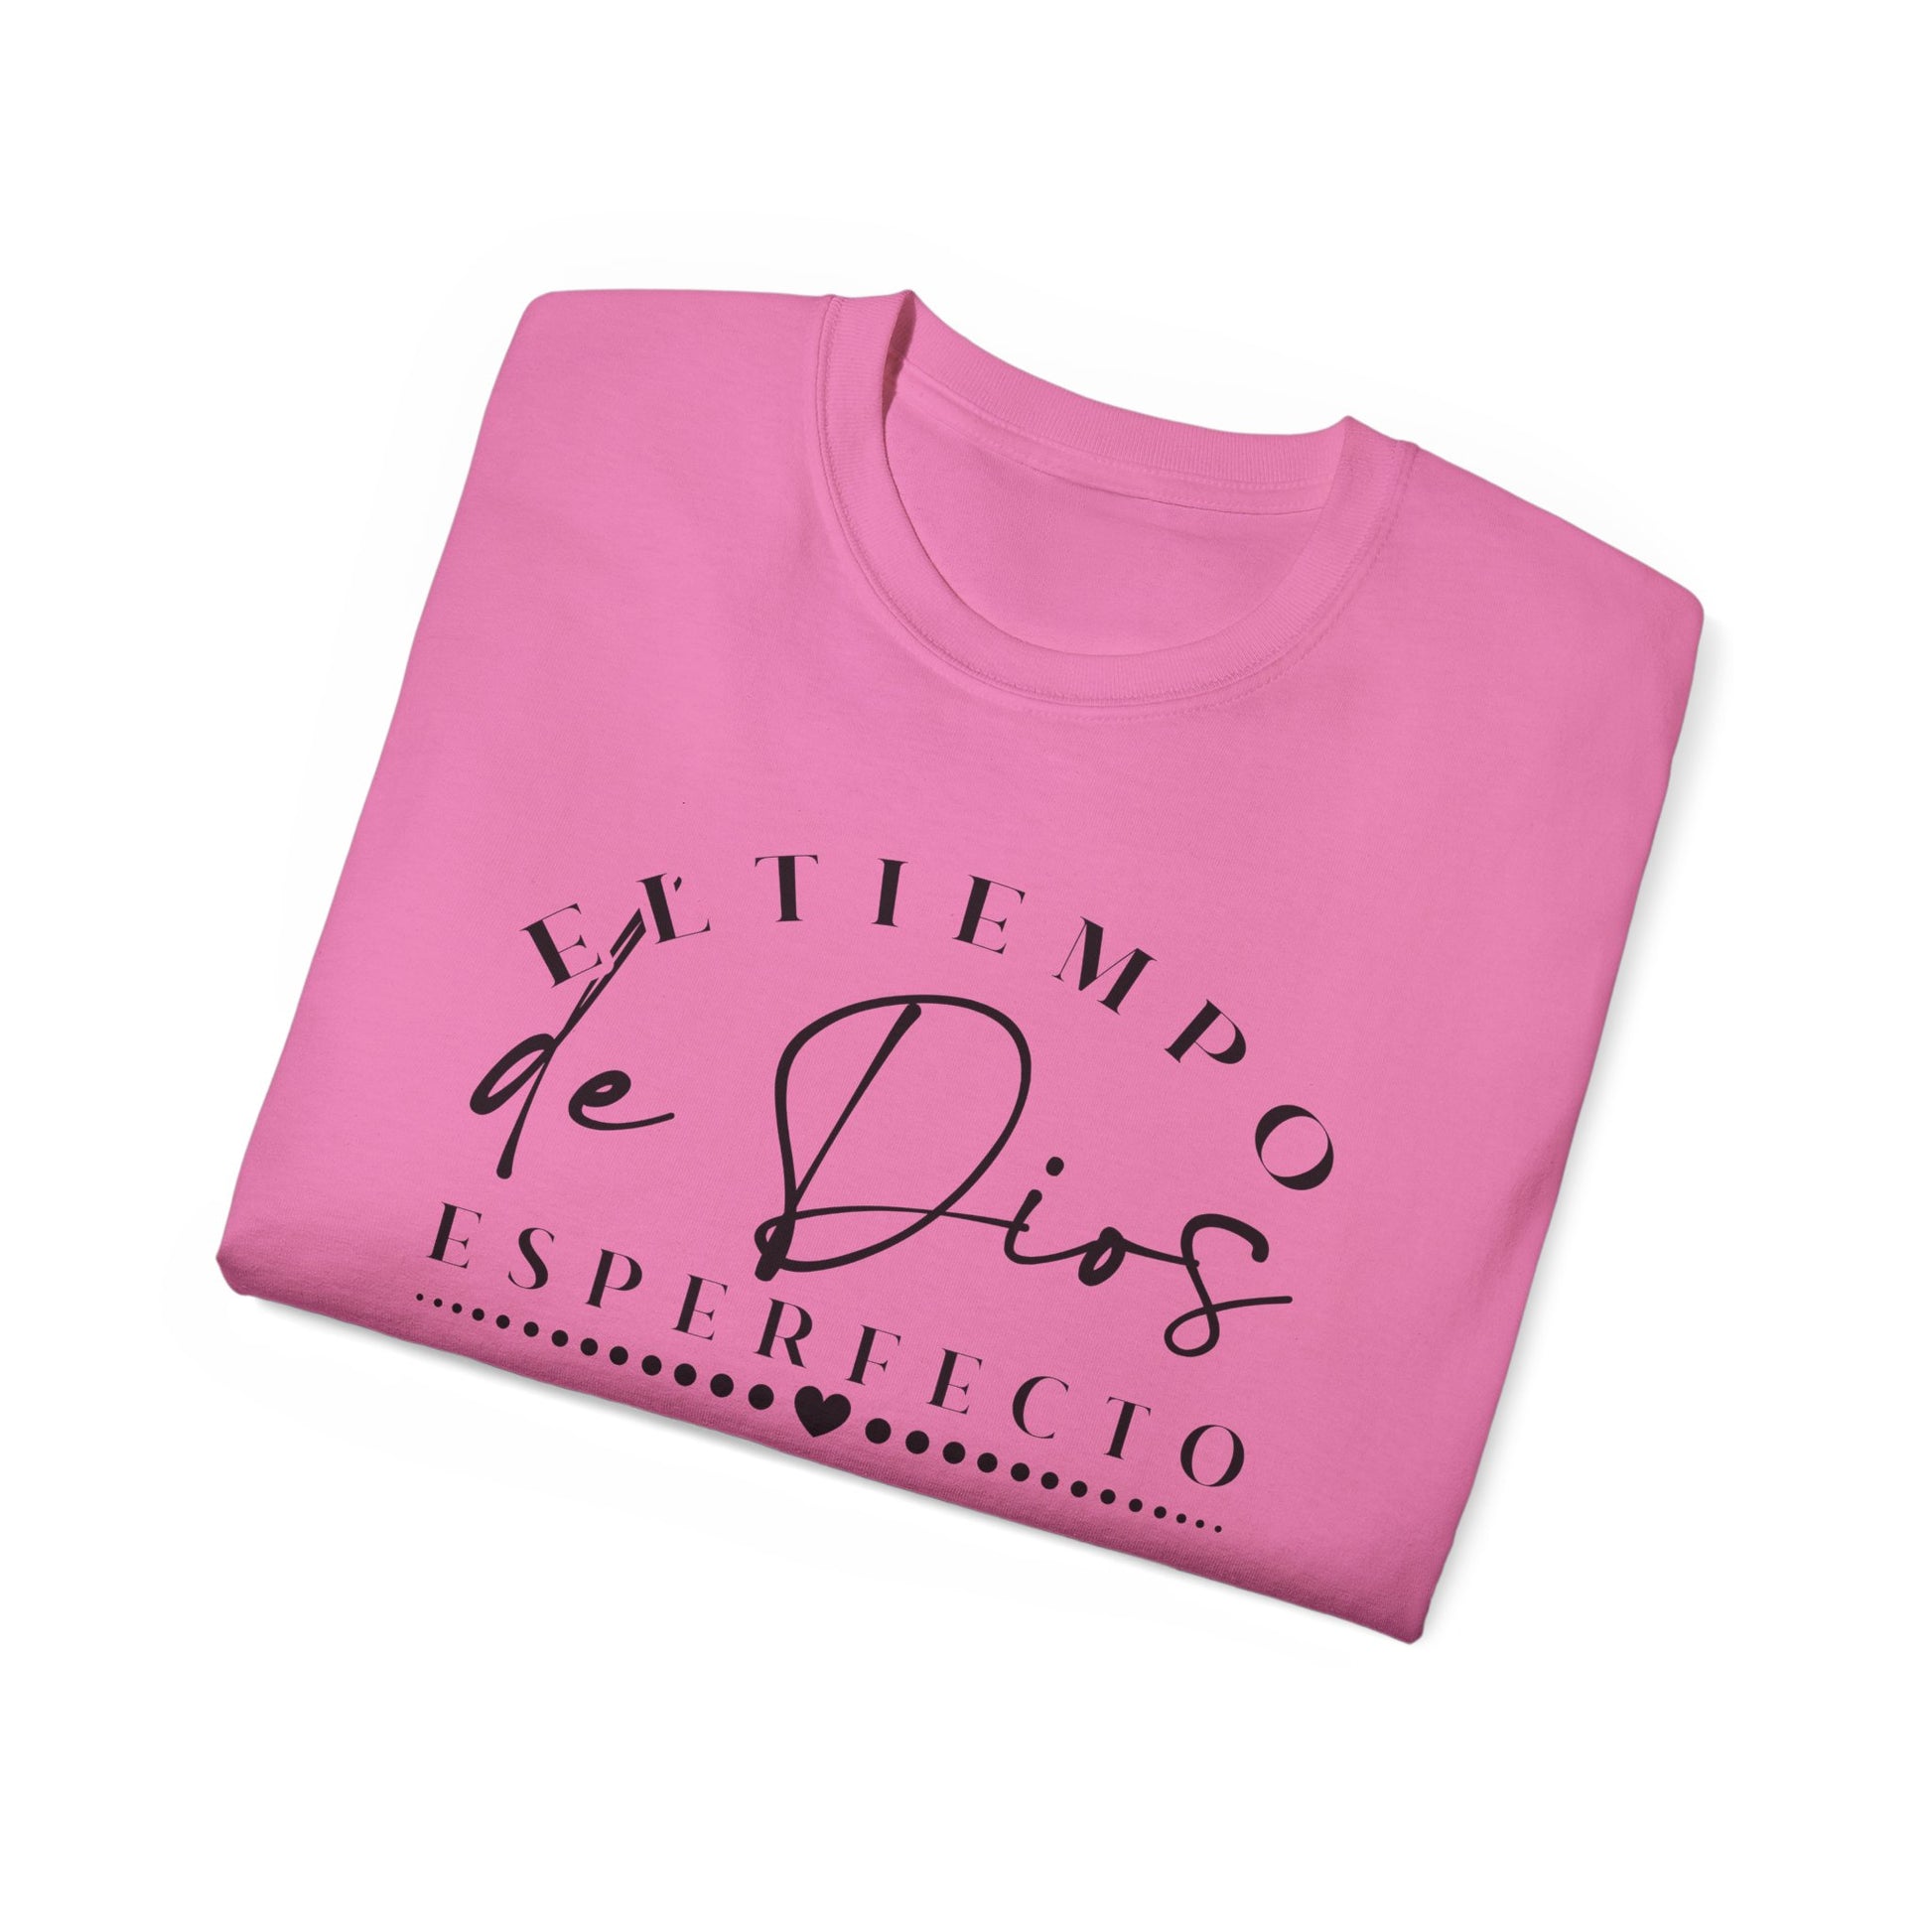 EL TIEMPO DE DIOS ES PERFECTO Christian Spanish Unisex T-shirt Printify